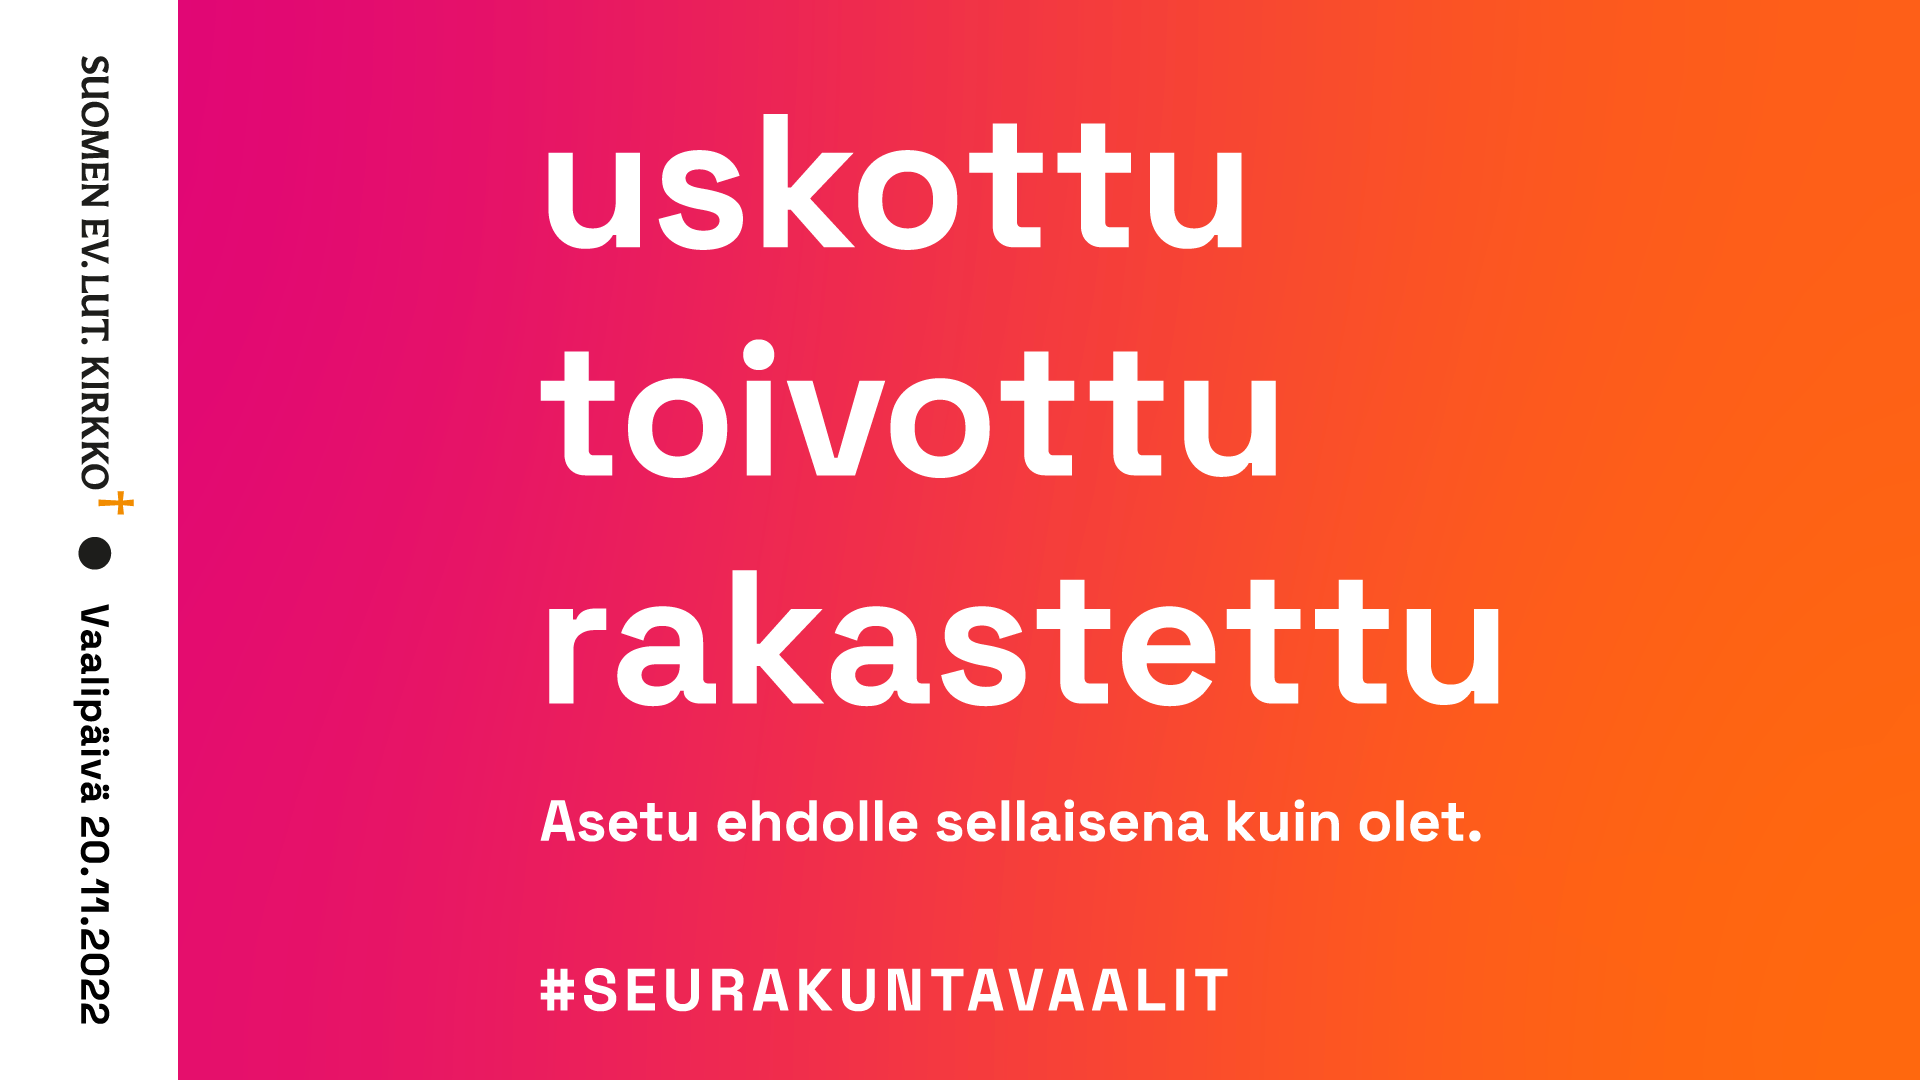 teksti: suomen ev.lut kirkko, vaalipäivä 20.11.2022. Uskottu, toivottu, rakastettu - asetu ehdolle